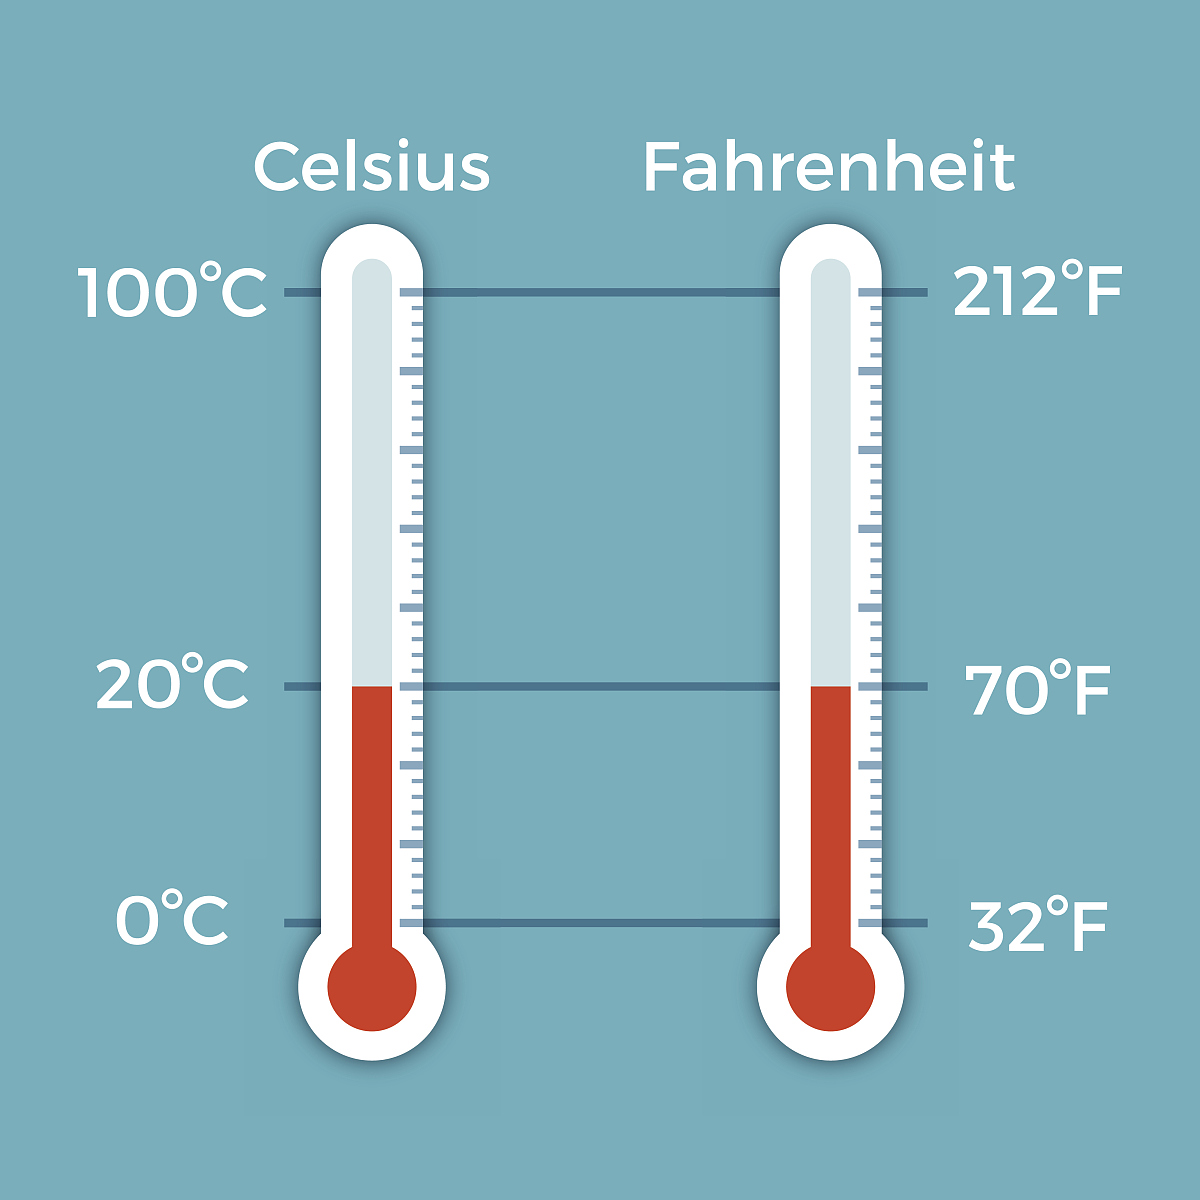 華氏溫度表